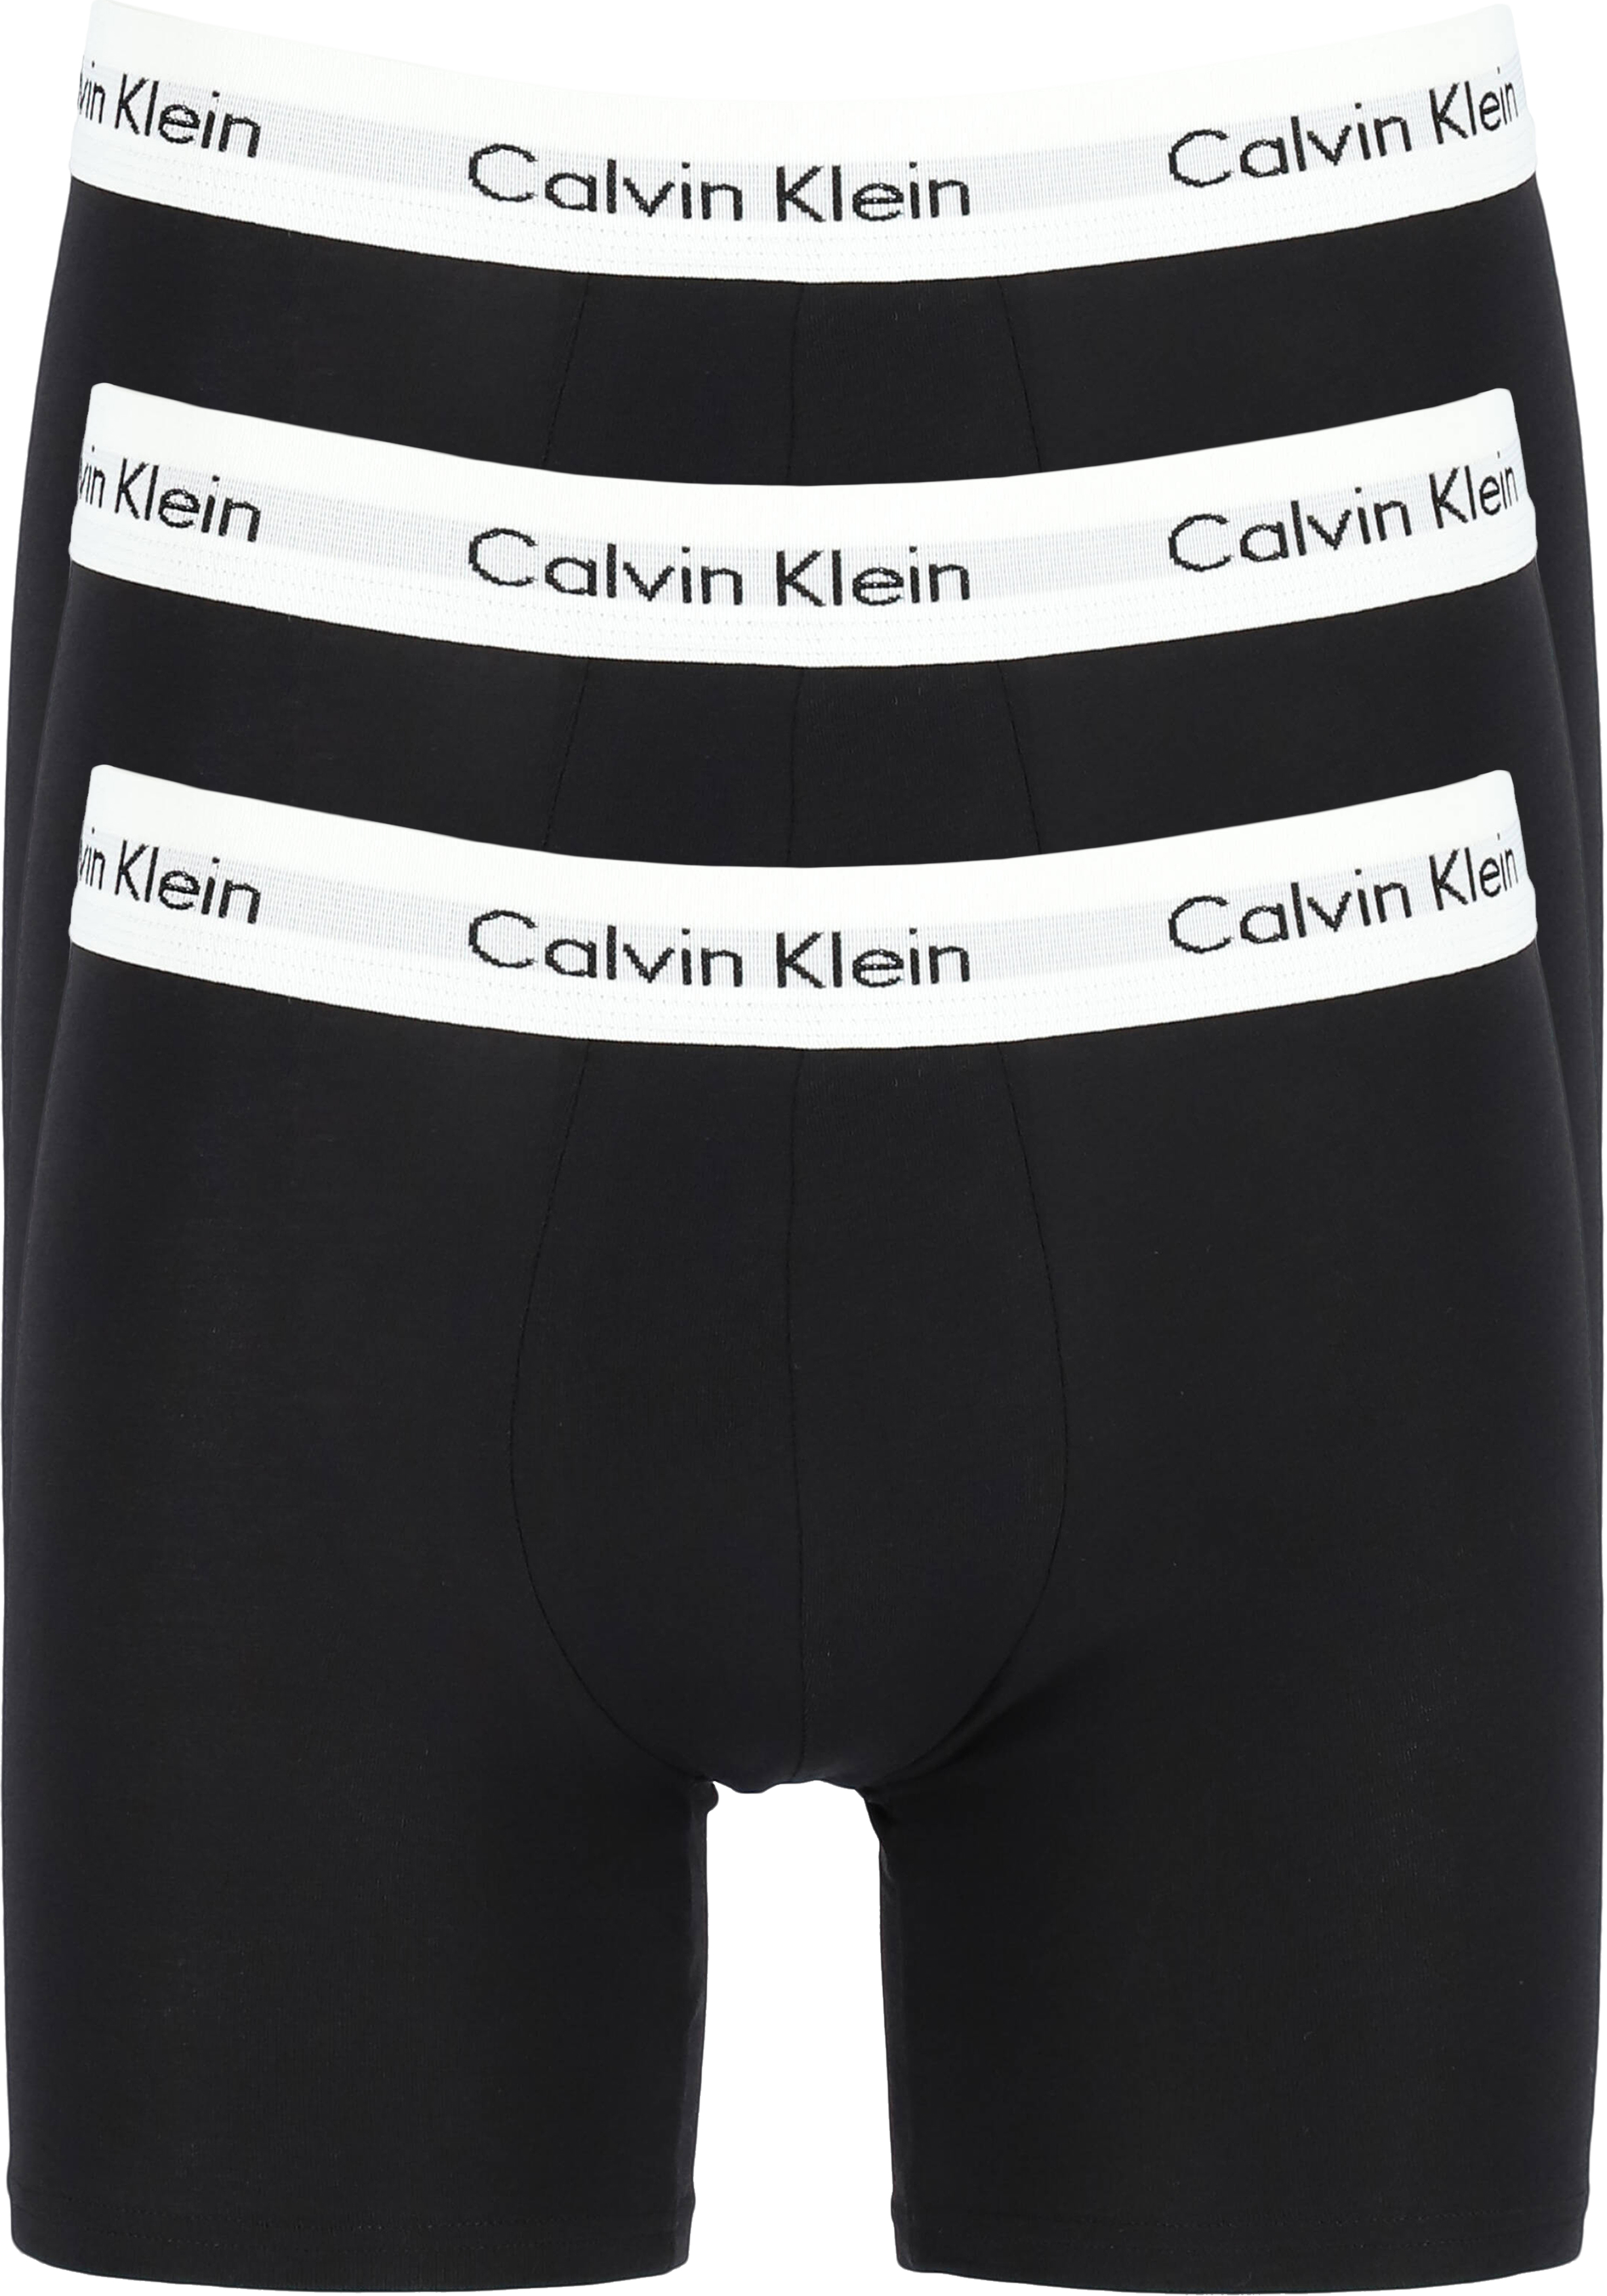 Calvin Klein Cotton Stretch boxer (3-pack), heren boxers extra... - vakantie DEALS: bestel vele van met korting